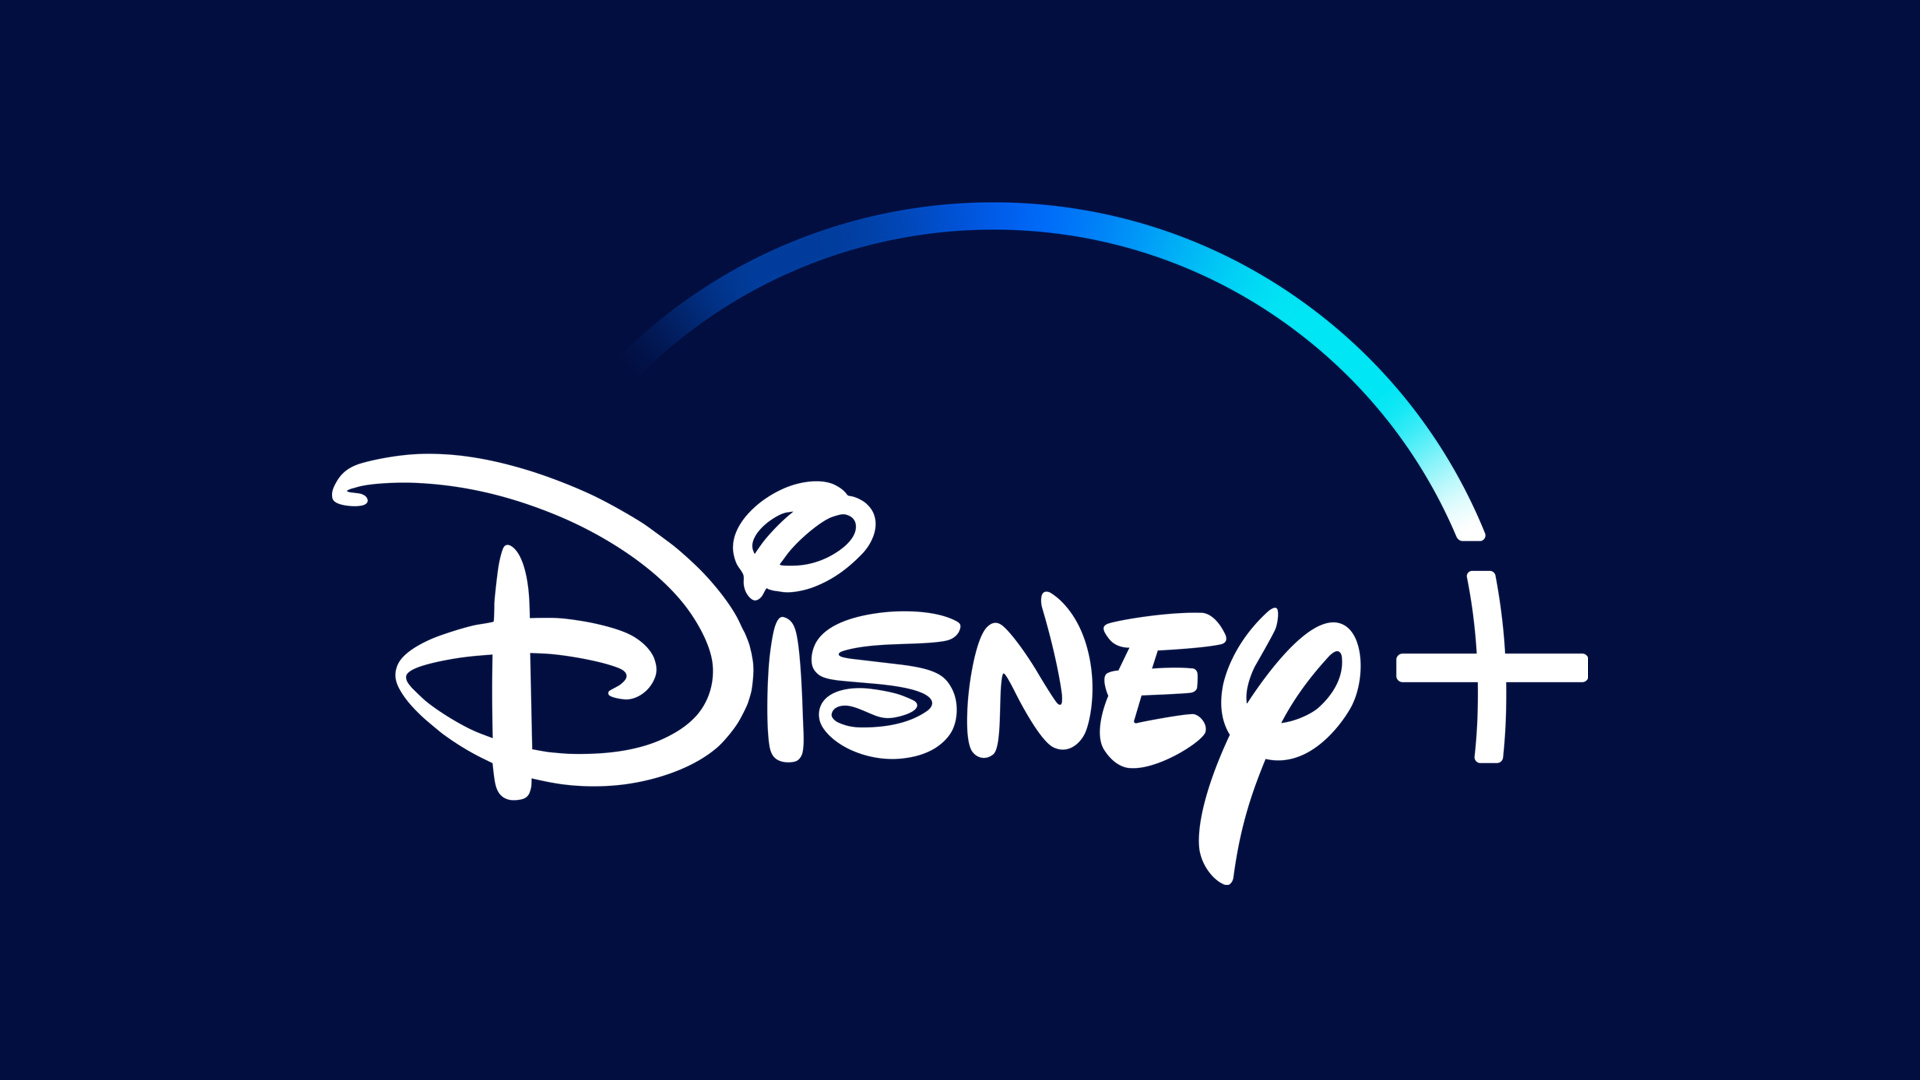 Logotipo antiguo de Disney+